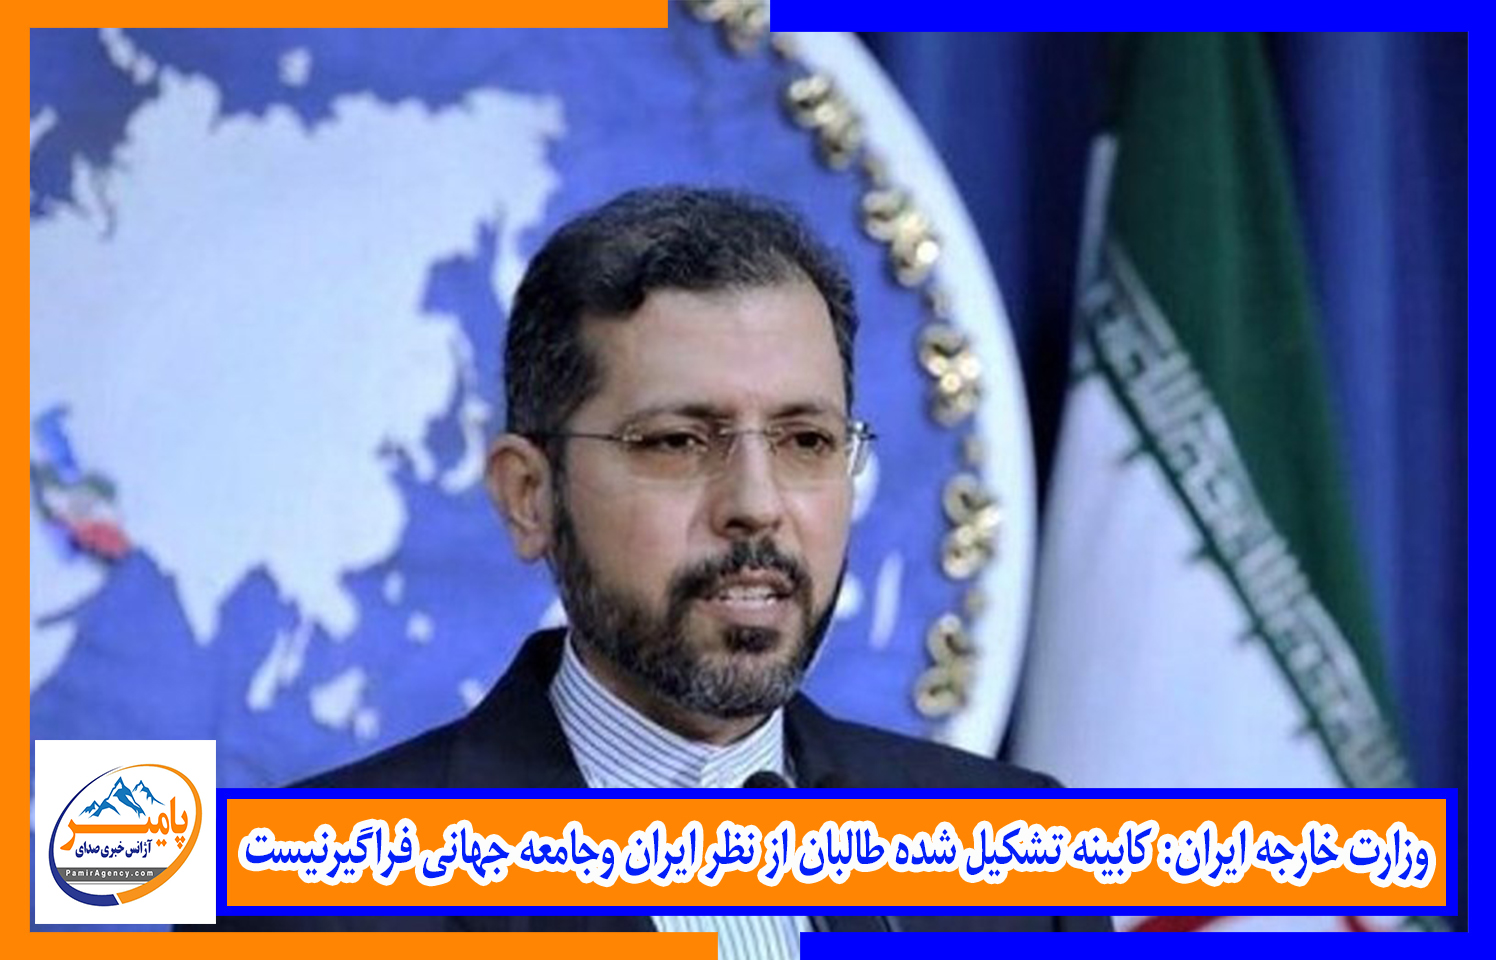 وزارت خارجه ایران: کابینه تشکیل شده طالبان از نظر ایران وجامعه جهانی فراگیرنیست